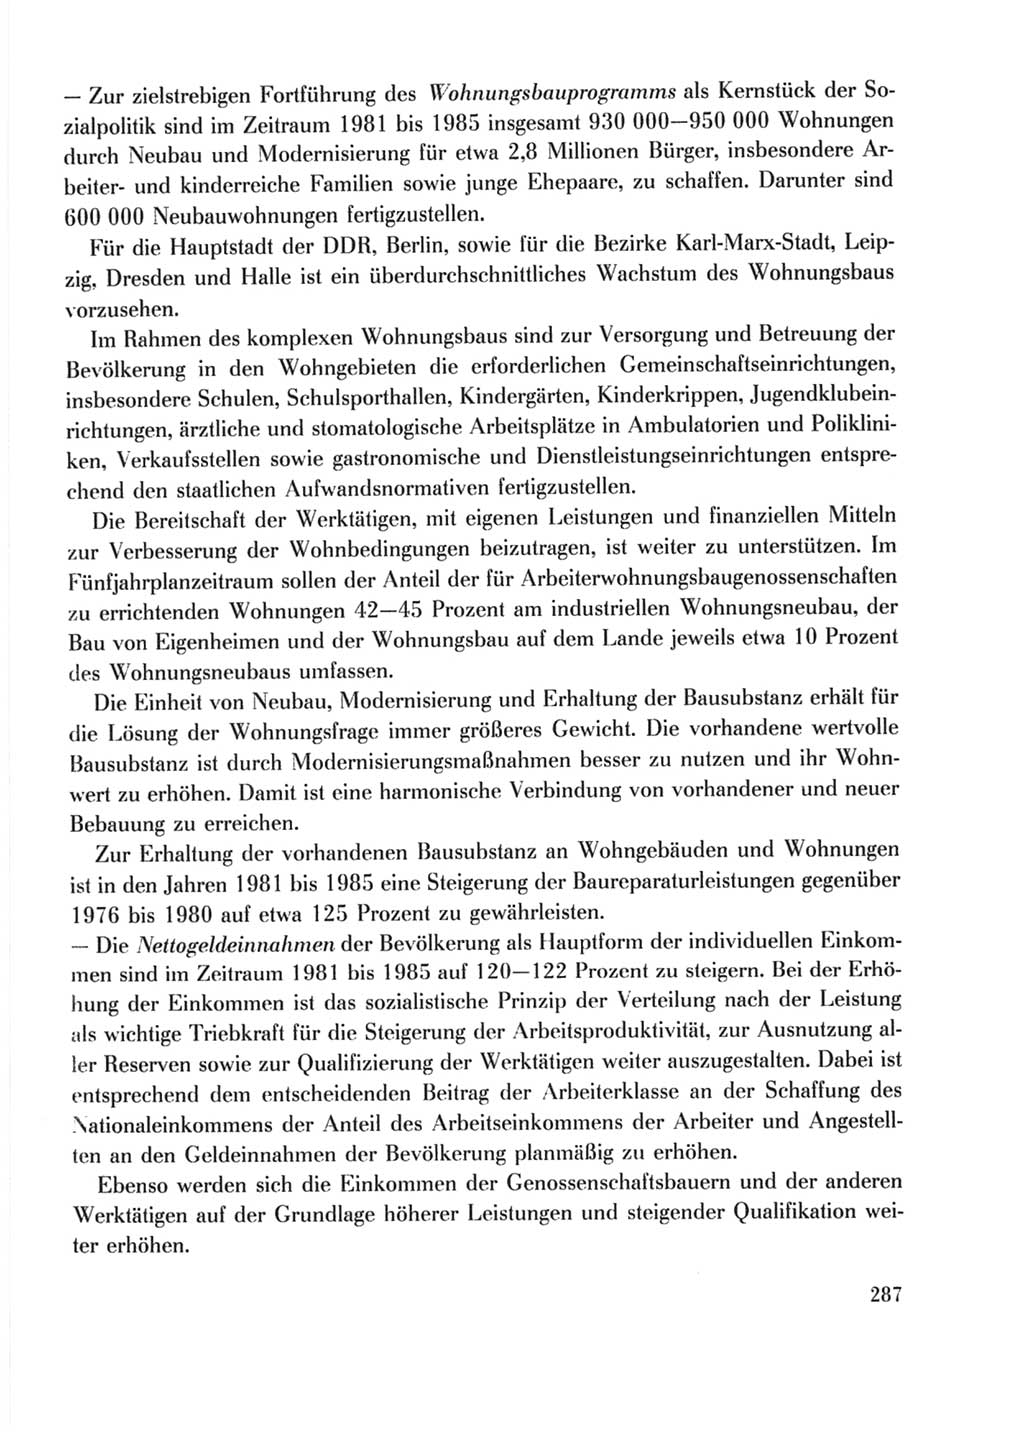 Protokoll der Verhandlungen des Ⅹ. Parteitages der Sozialistischen Einheitspartei Deutschlands (SED) [Deutsche Demokratische Republik (DDR)] 1981, Band 2, Seite 287 (Prot. Verh. Ⅹ. PT SED DDR 1981, Bd. 2, S. 287)